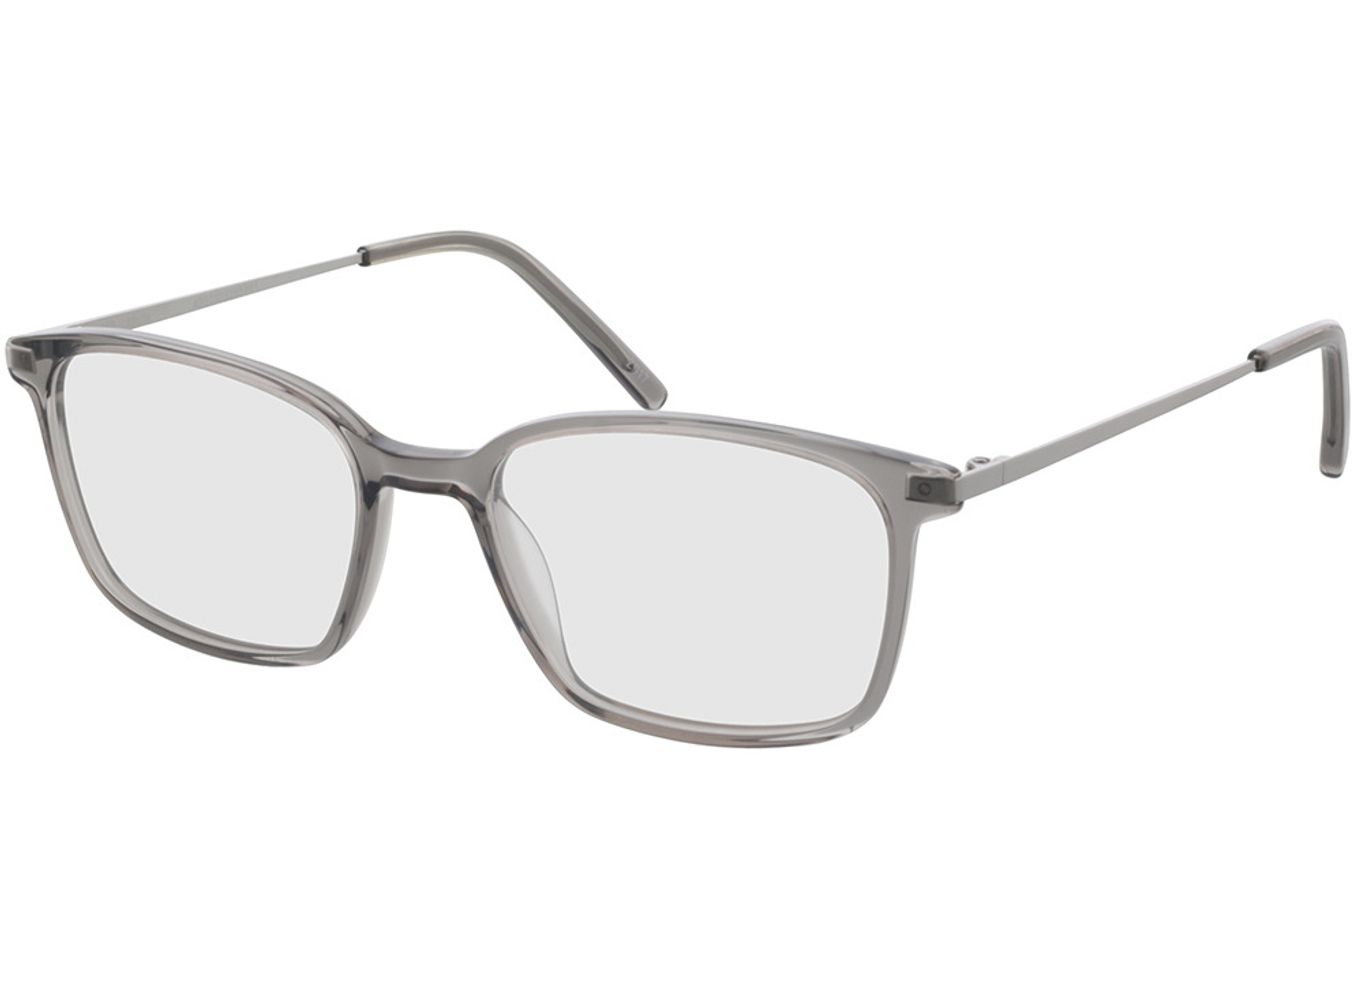 Melle - grau/silber Brillengestell inkl. Gläser, Vollrand, Rechteckig von Brille24 Collection